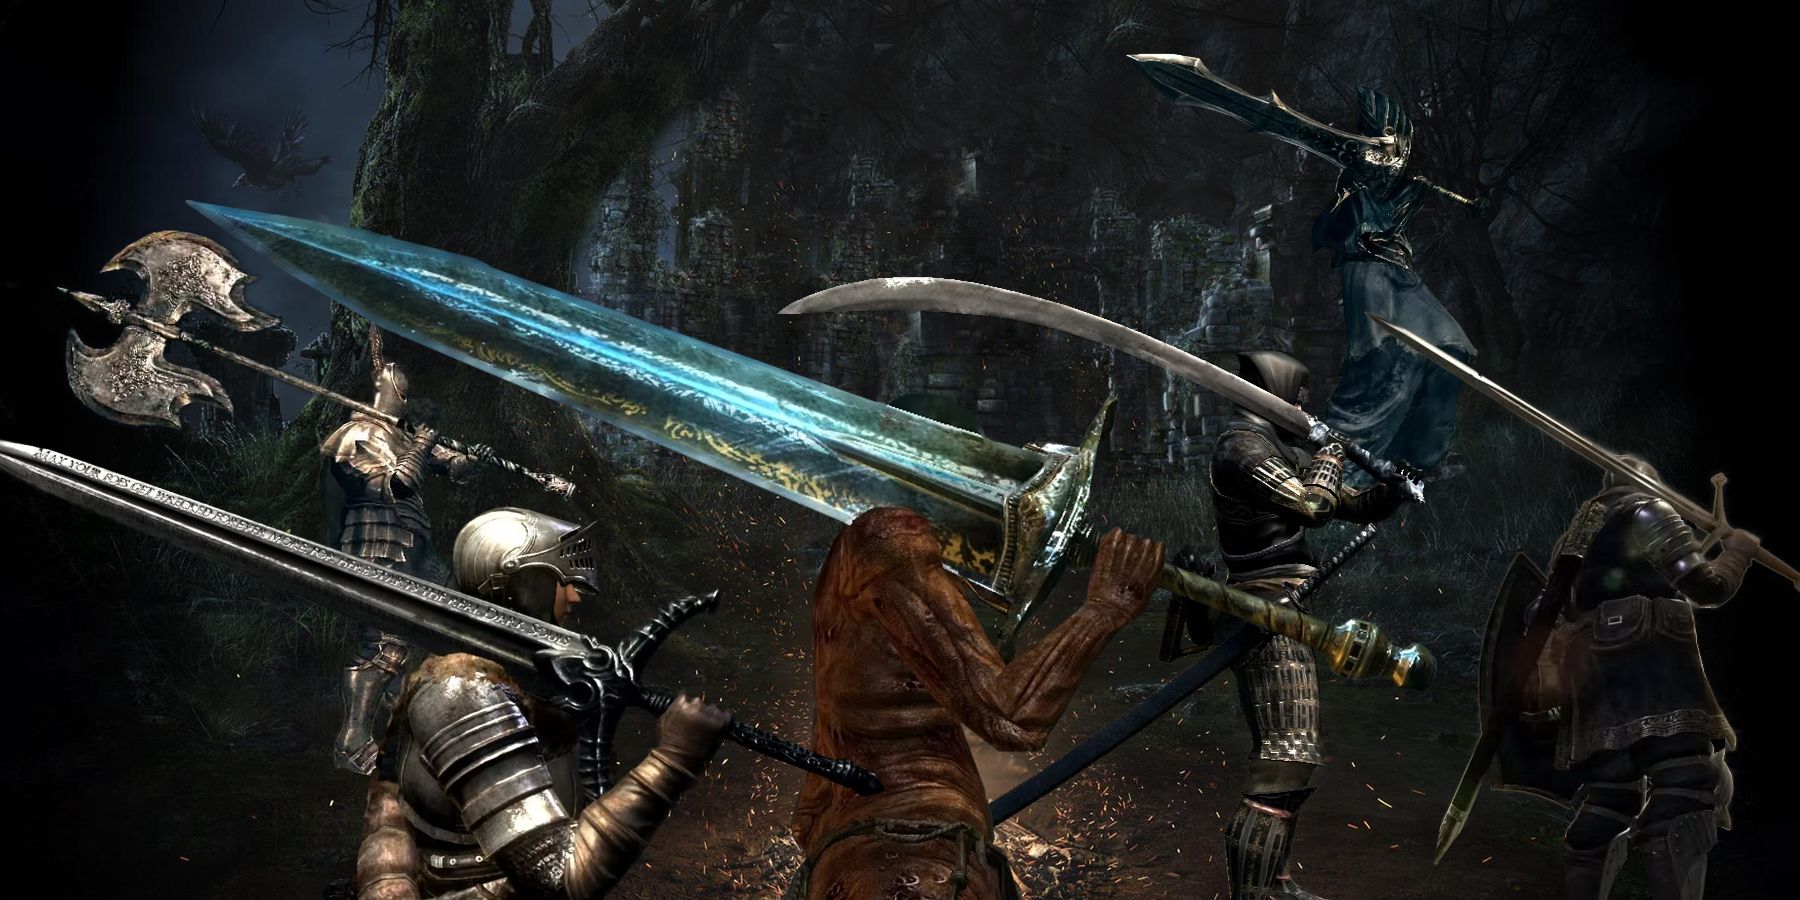 Dark Souls 3 - How To Beat Dark Sword 